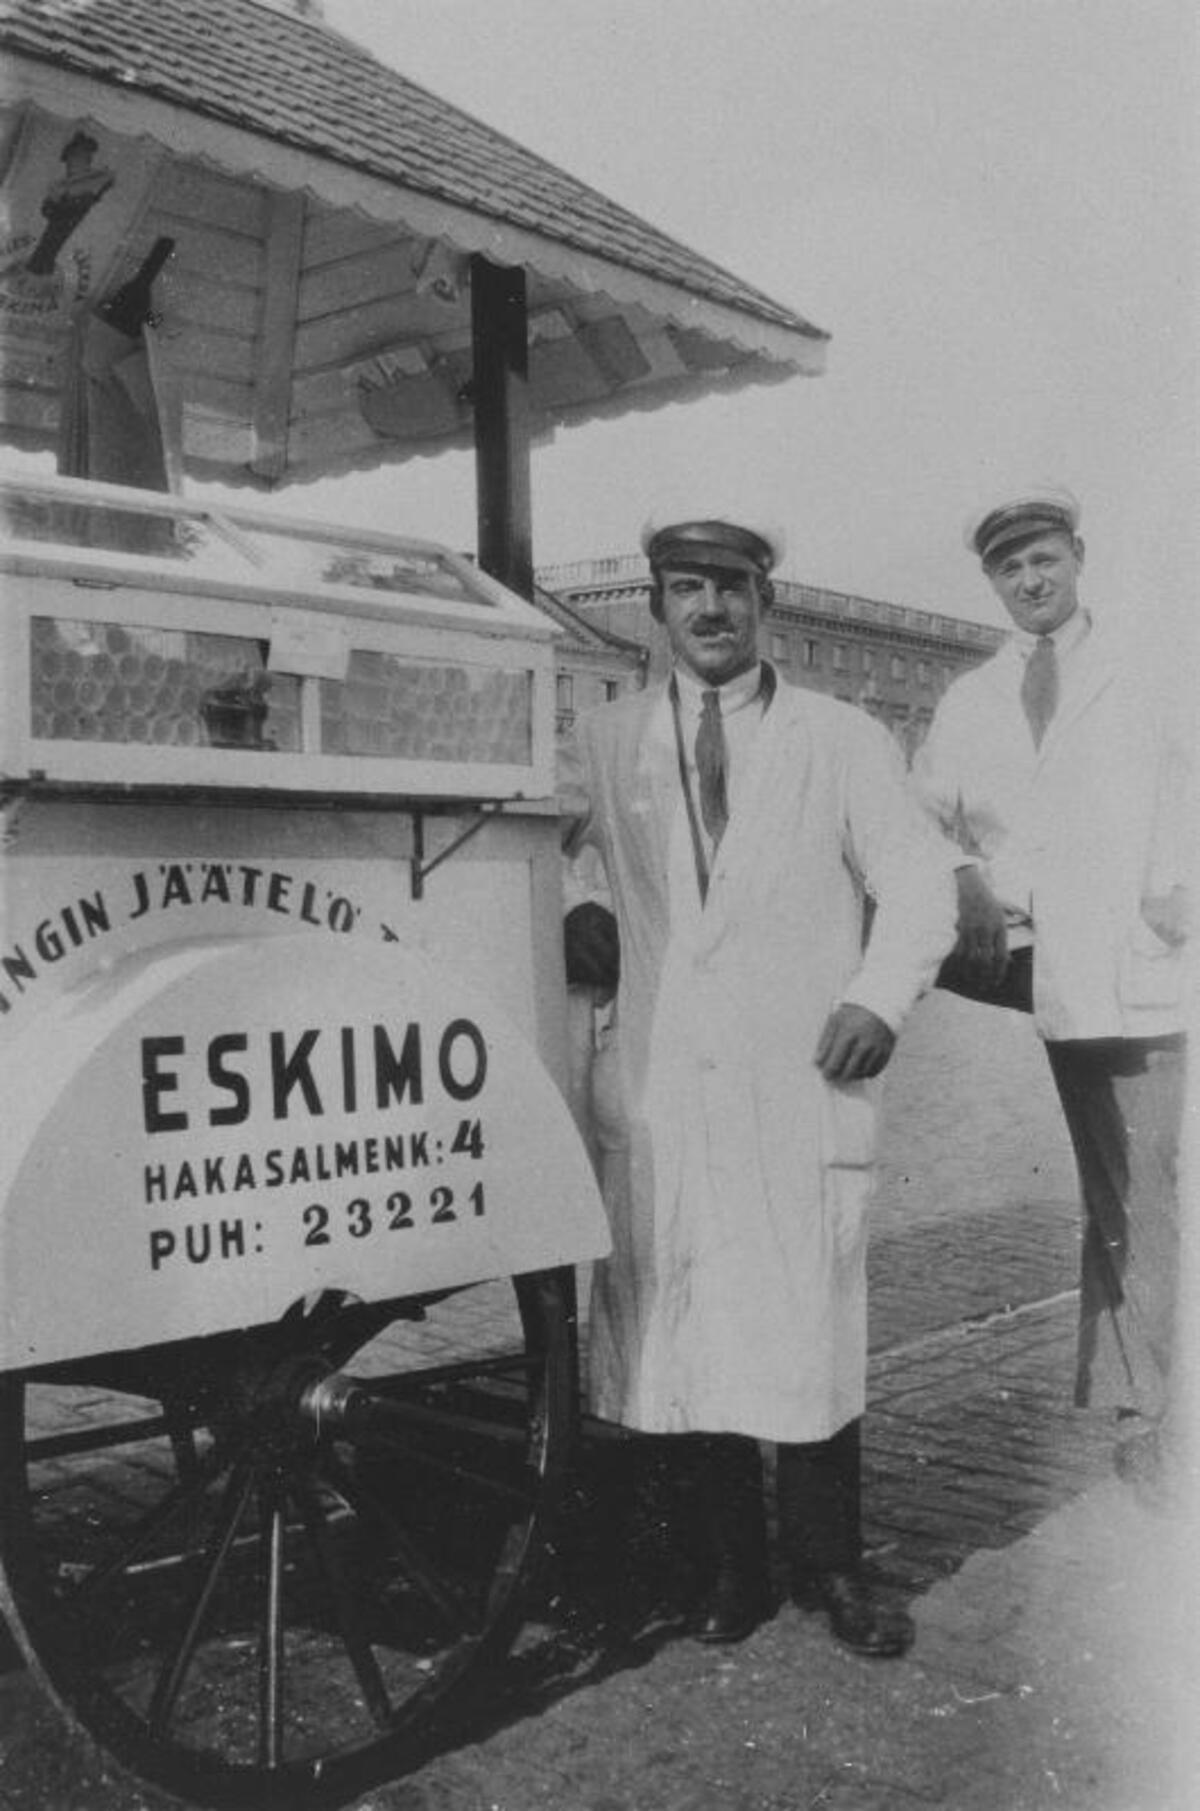 I början såldes glass från mobila försäljningsvagnar. Helsingfors glassfabriks försäljare med sin vagn. Foto: KAMU Esbo stadsmuseum / Okänd fotograf